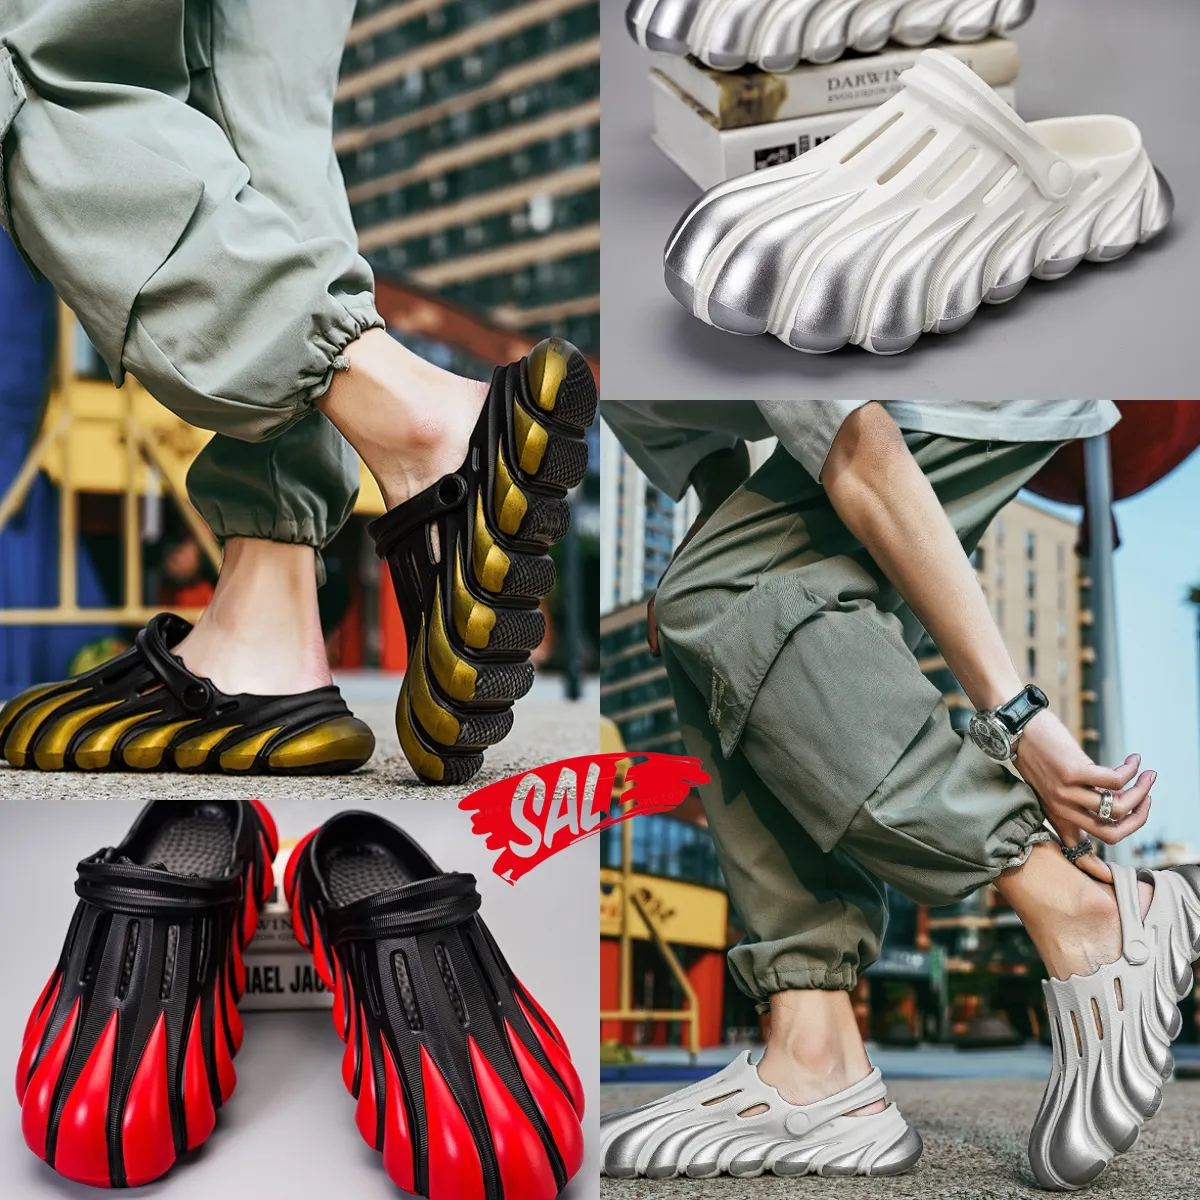 Nouvelles modes Eva Step on Poo Feeling Platform Sandals Summer Beach Chaussures pour hommes Sac Toe Multi-couleur Sandales respirantes Gai Taille 40-45